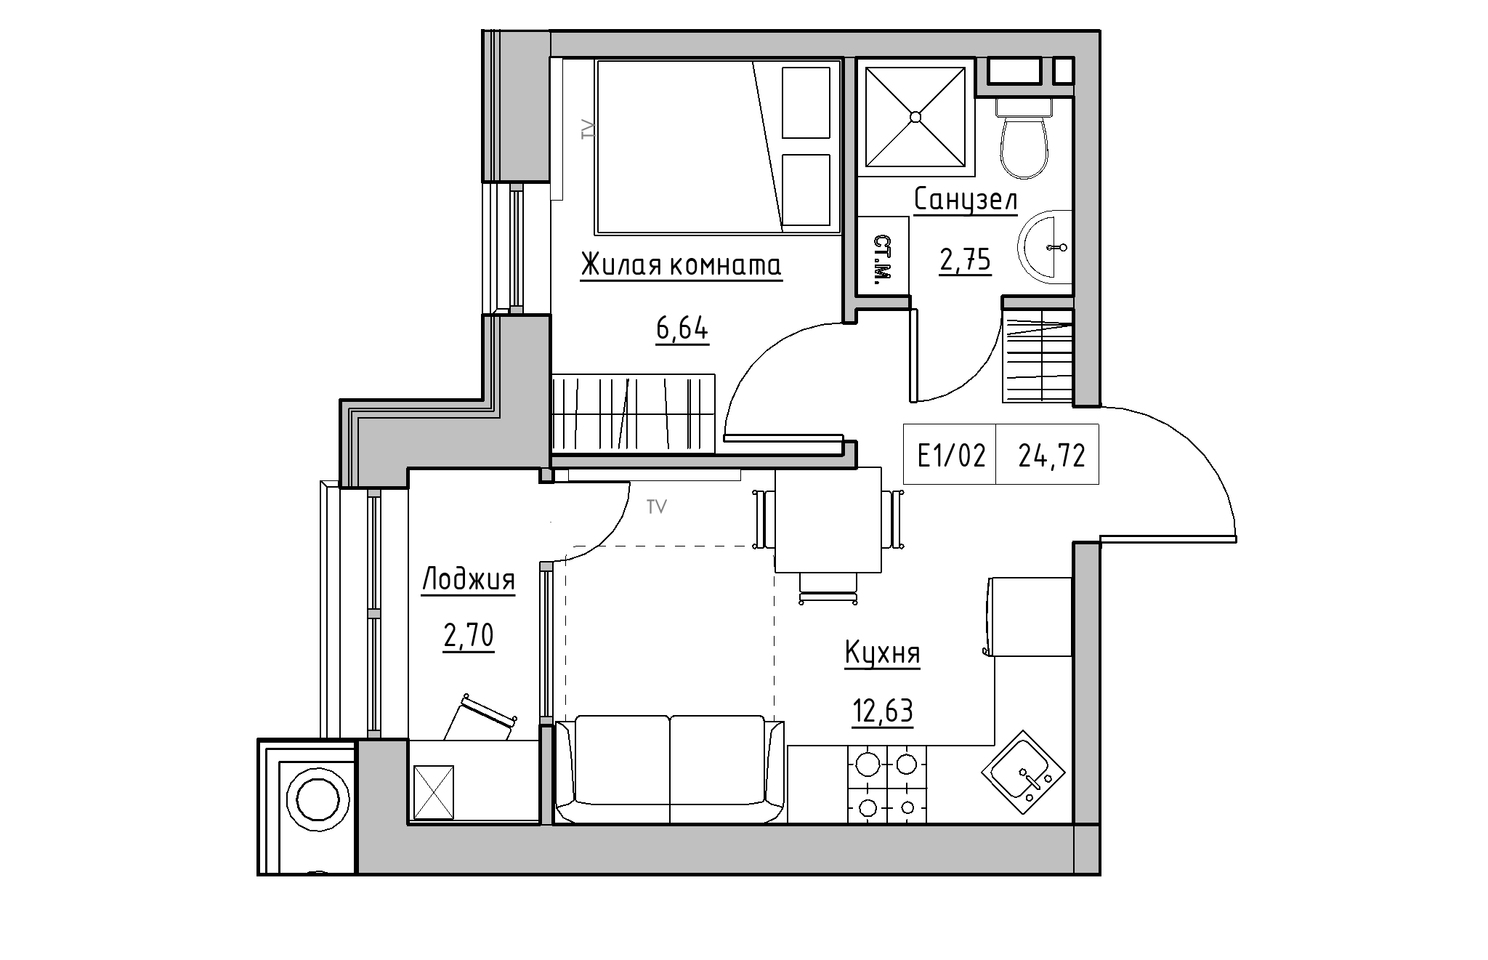 Планування 1-к квартира площею 24.72м2, KS-010-02/0013.